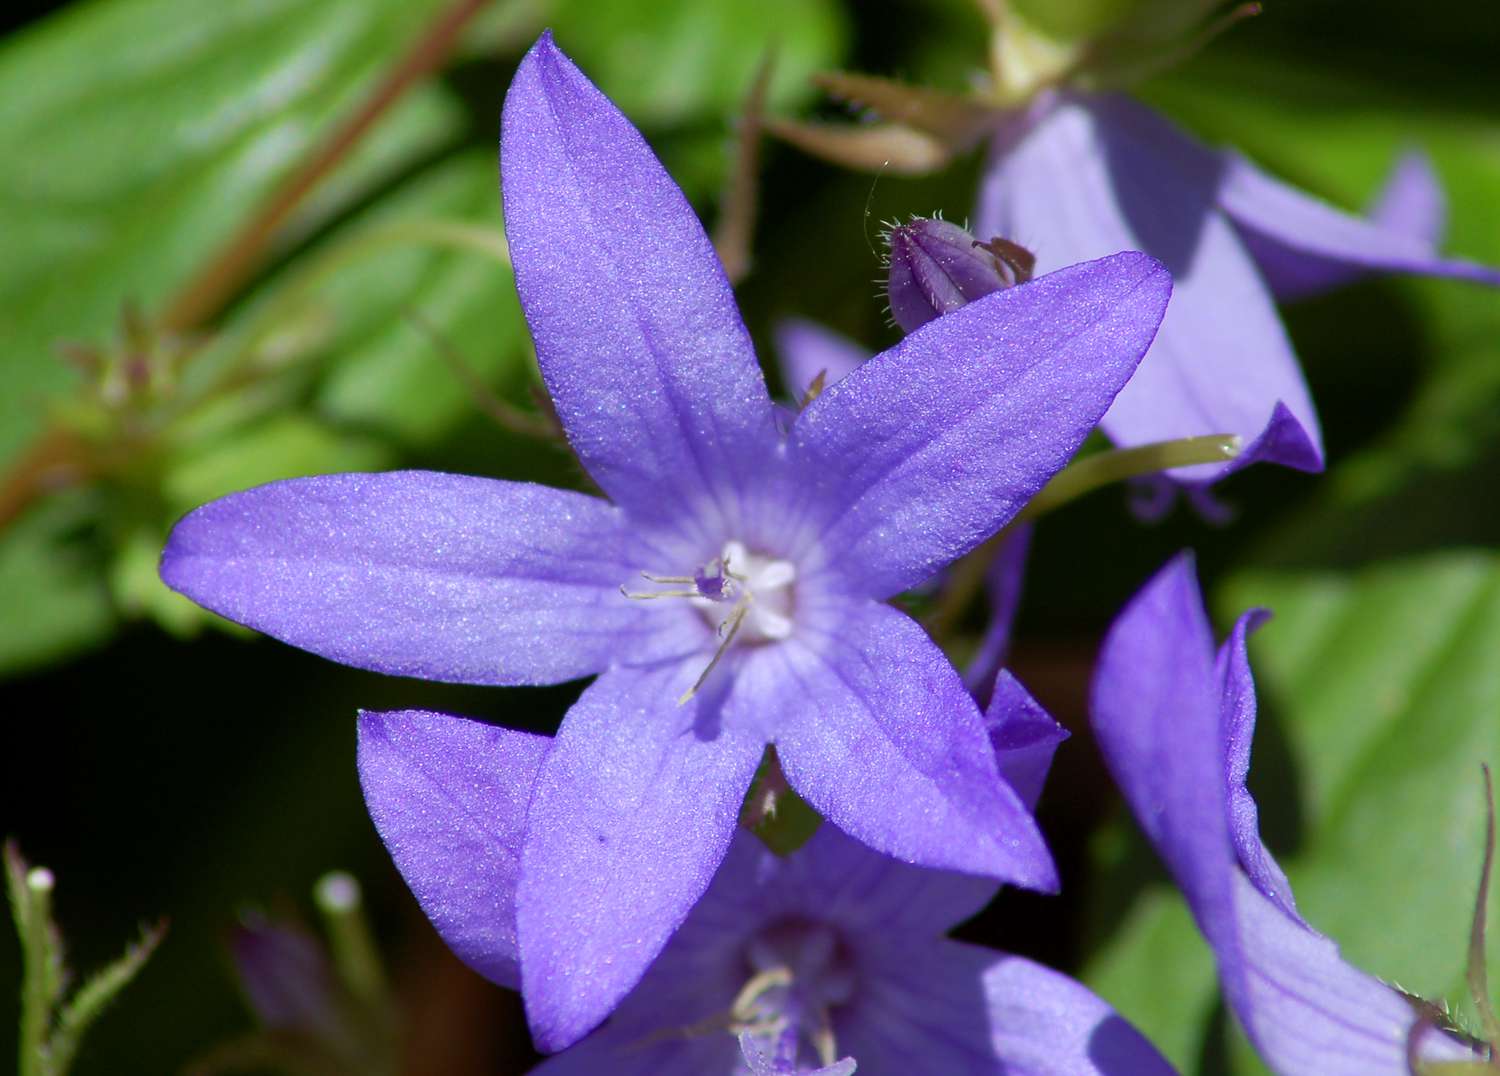 Campanula portenschlagiana (Bild) ist eine von mehreren Pflanzen, die Glockenblumen genannt werden. Sie ist blühfreudig.